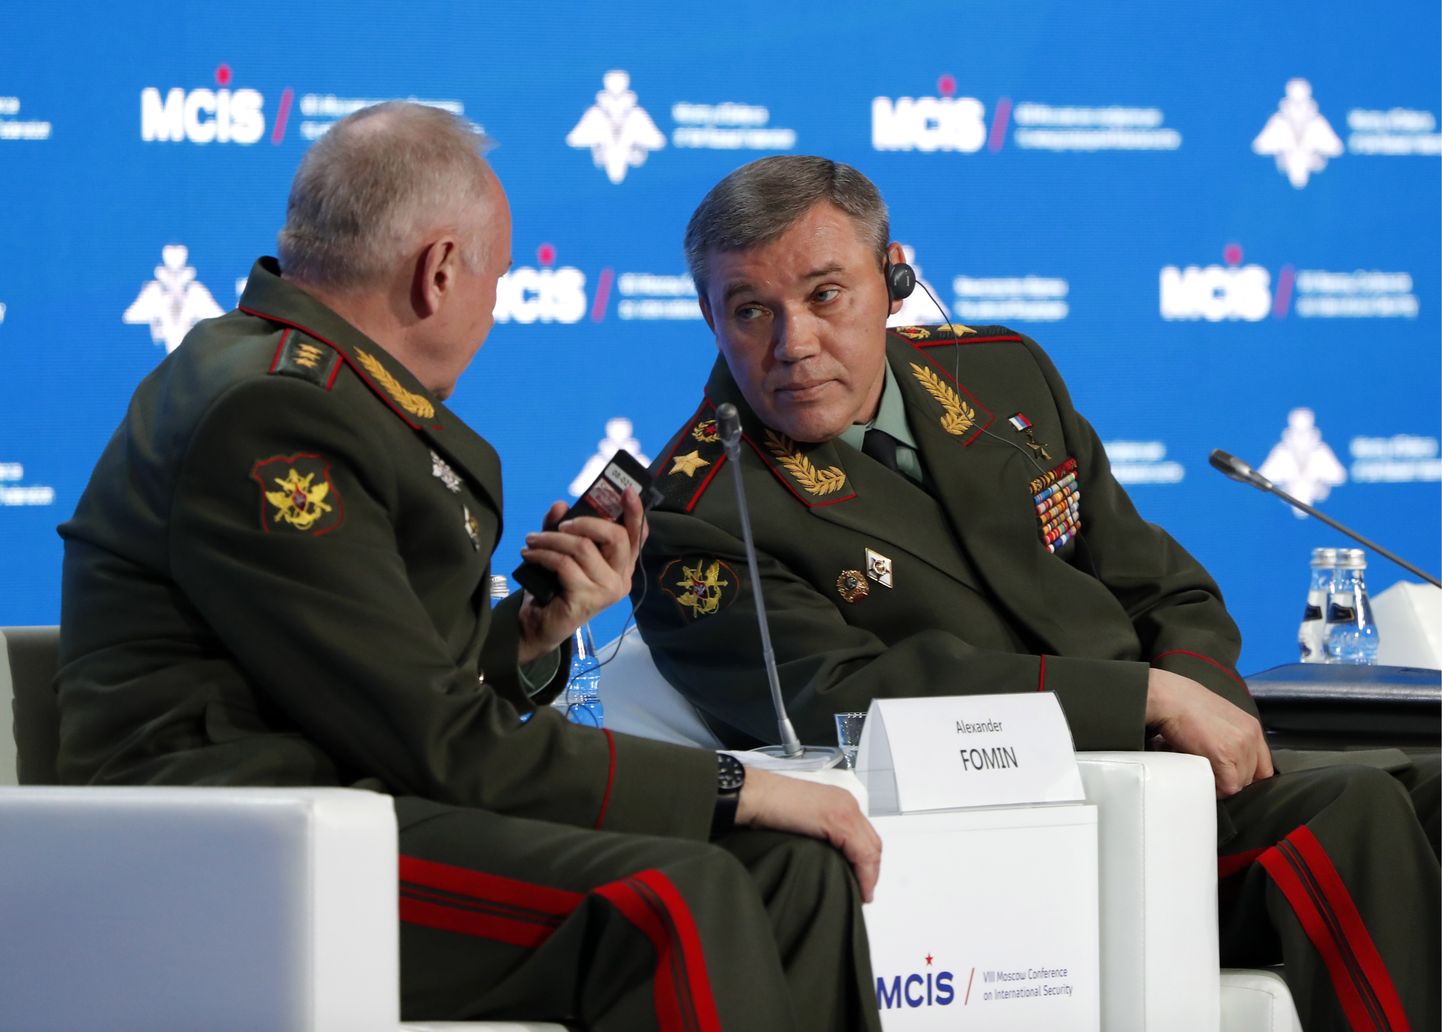 Vene kindralstaabi ülem Valeri Gerassimov (paremal) 24. aprillil Moskva julgeolekukonverentsil.